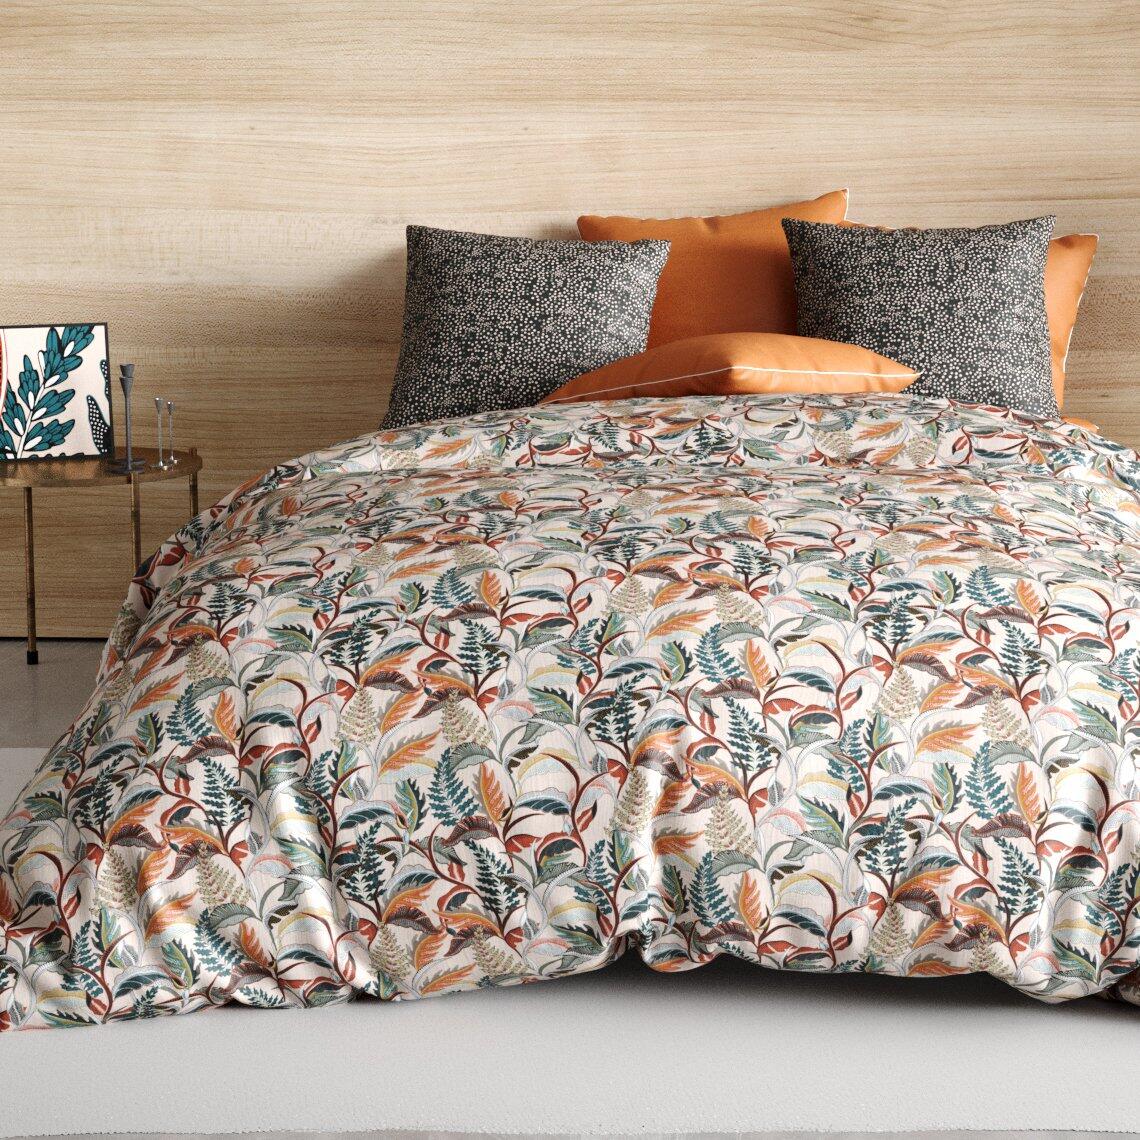 Juego de sábana encimera y fundas para almohada en algodón (240 x 290 cm) Balia Multicolor 1